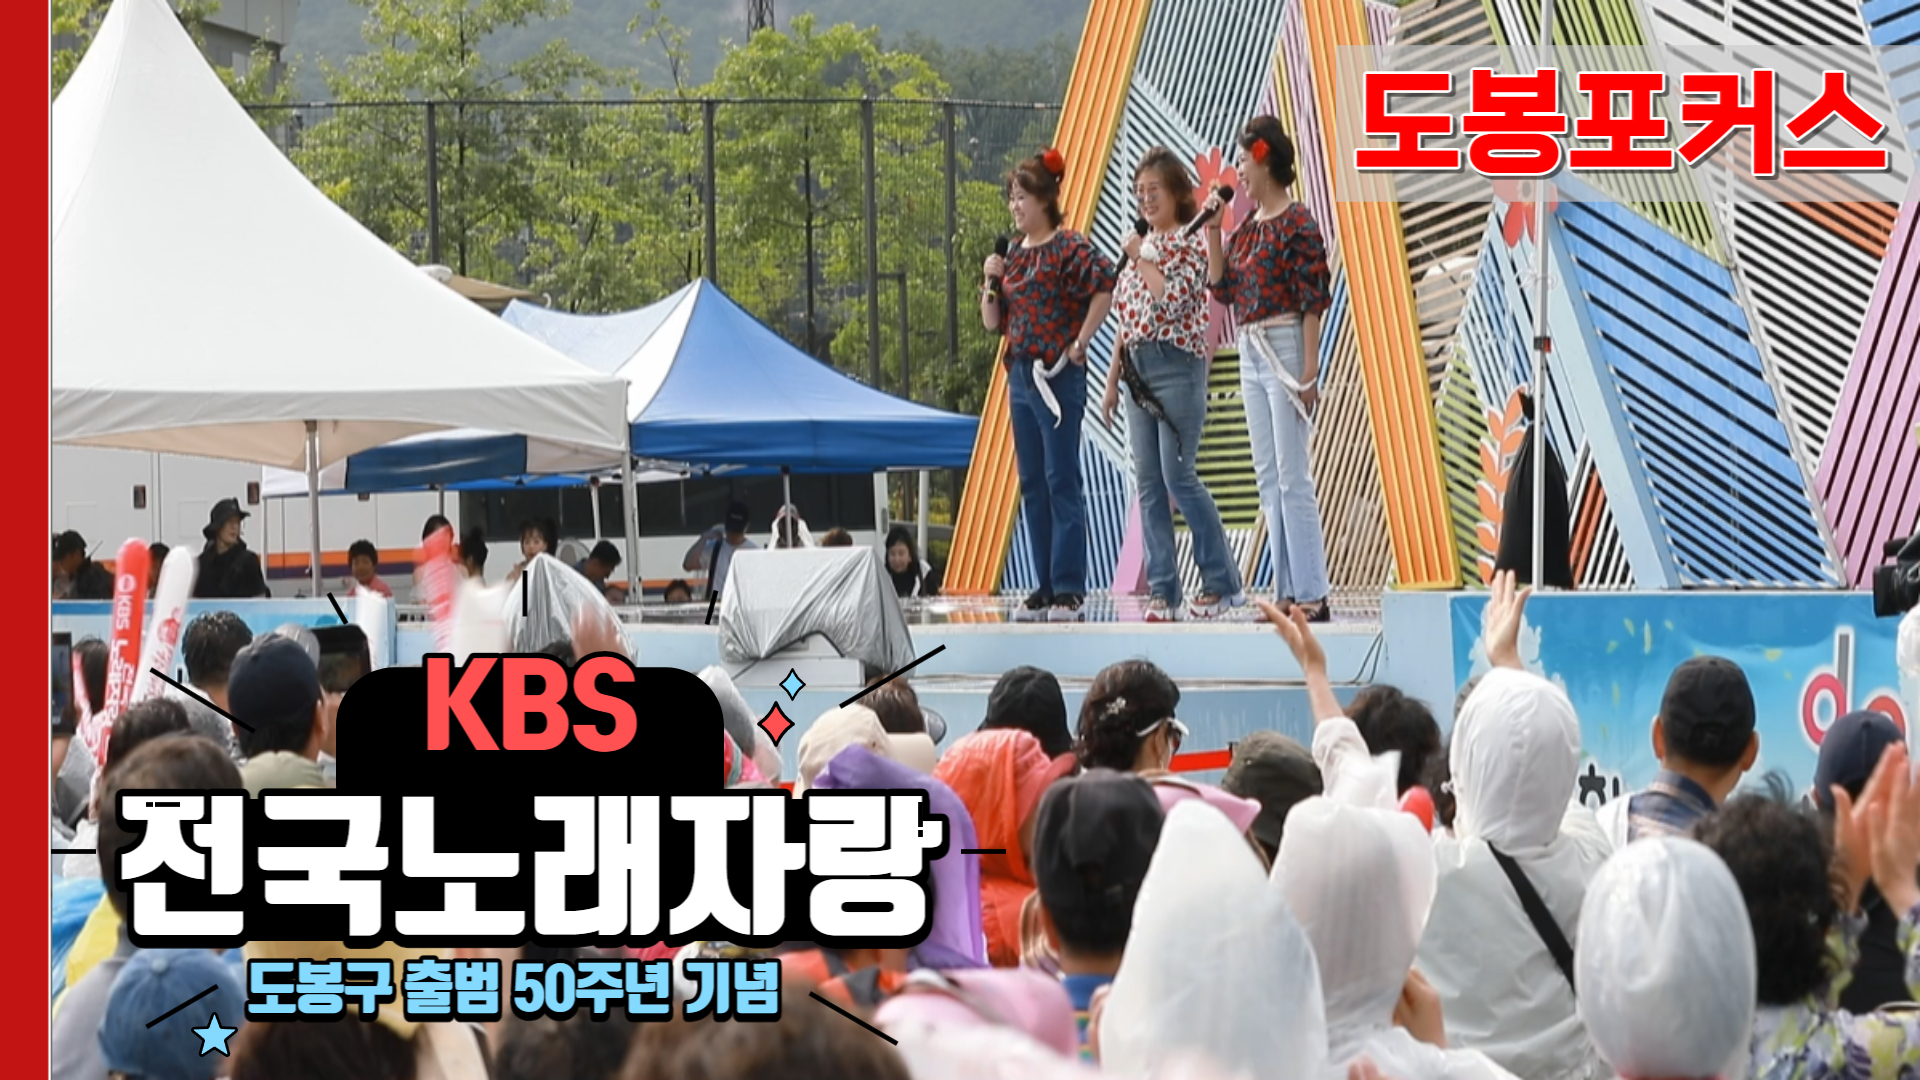 [도봉포커스] 도봉구 출범 50주년 기념 #KBS #전국노래자랑 도봉구편!